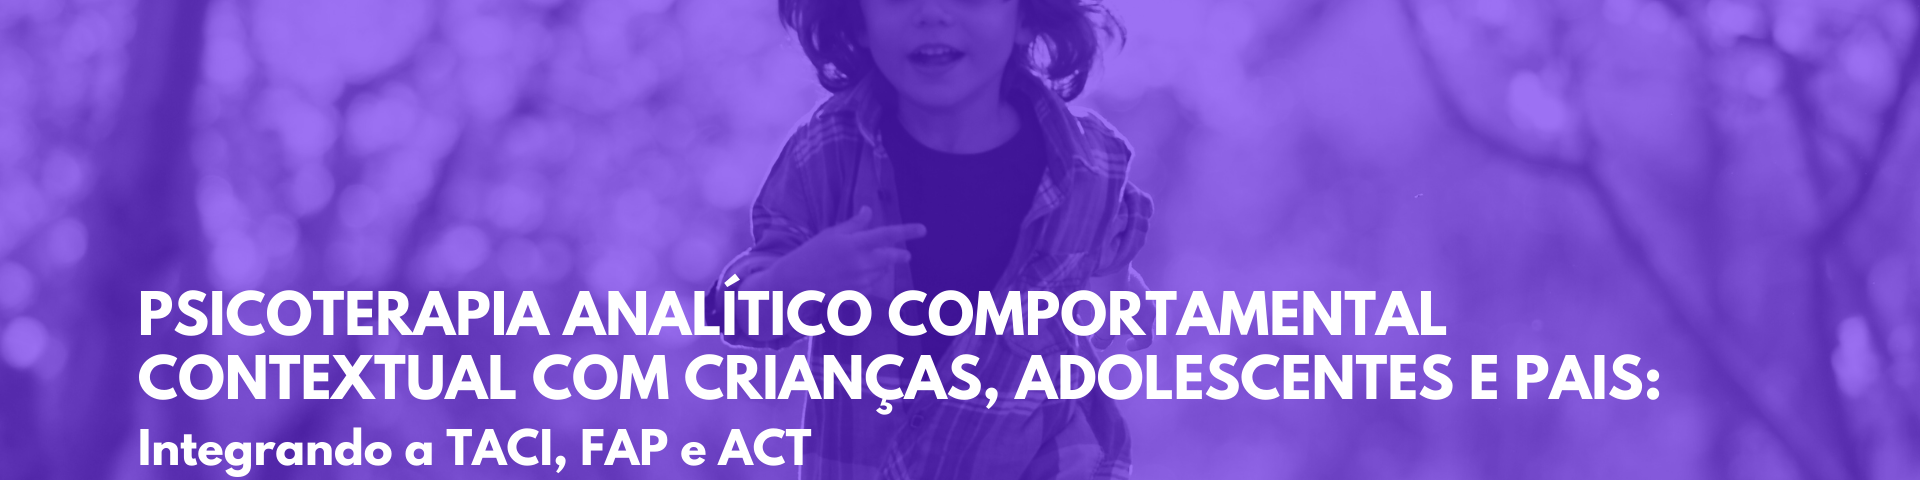 Psicoterapia Analítico Comportamental Contextual com Crianças, Adolescentes e Pais: Integrando a TACI, FAP e ACT